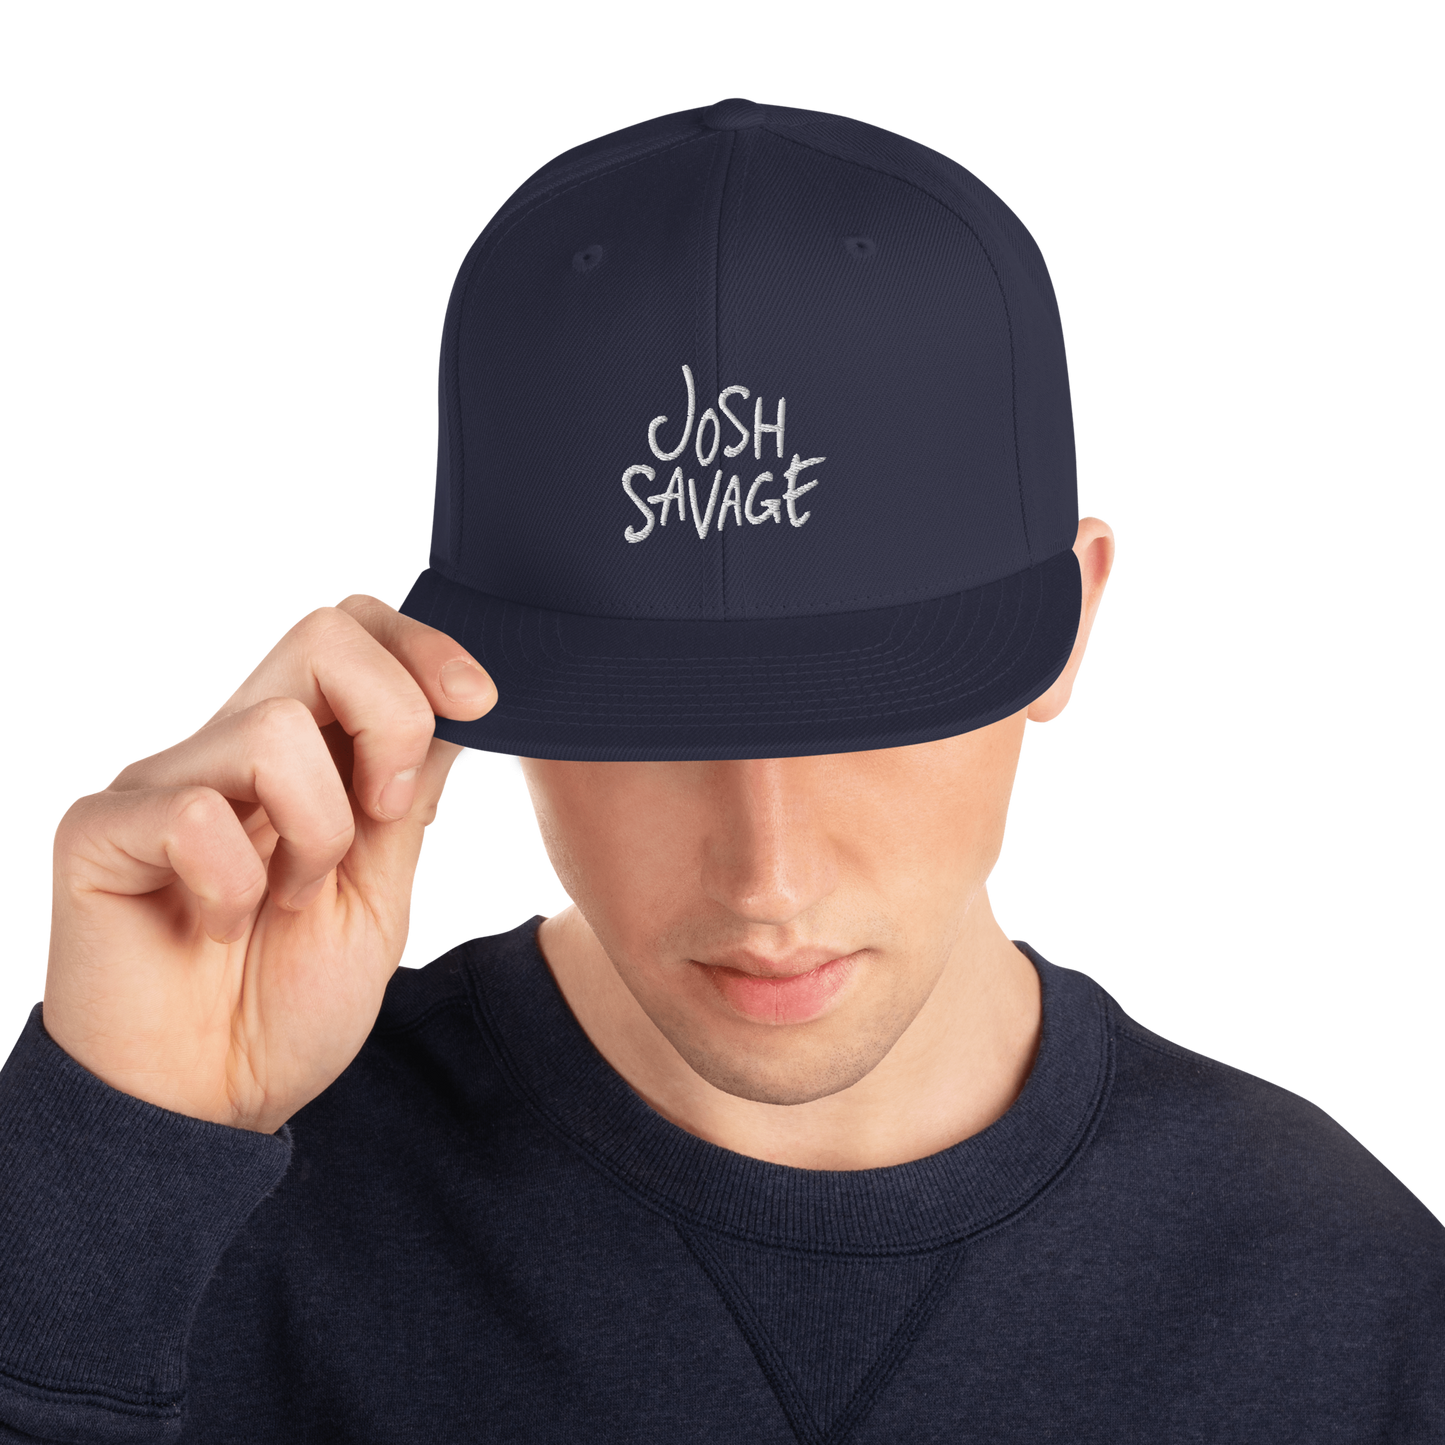 Josh Savage Snapback Hat